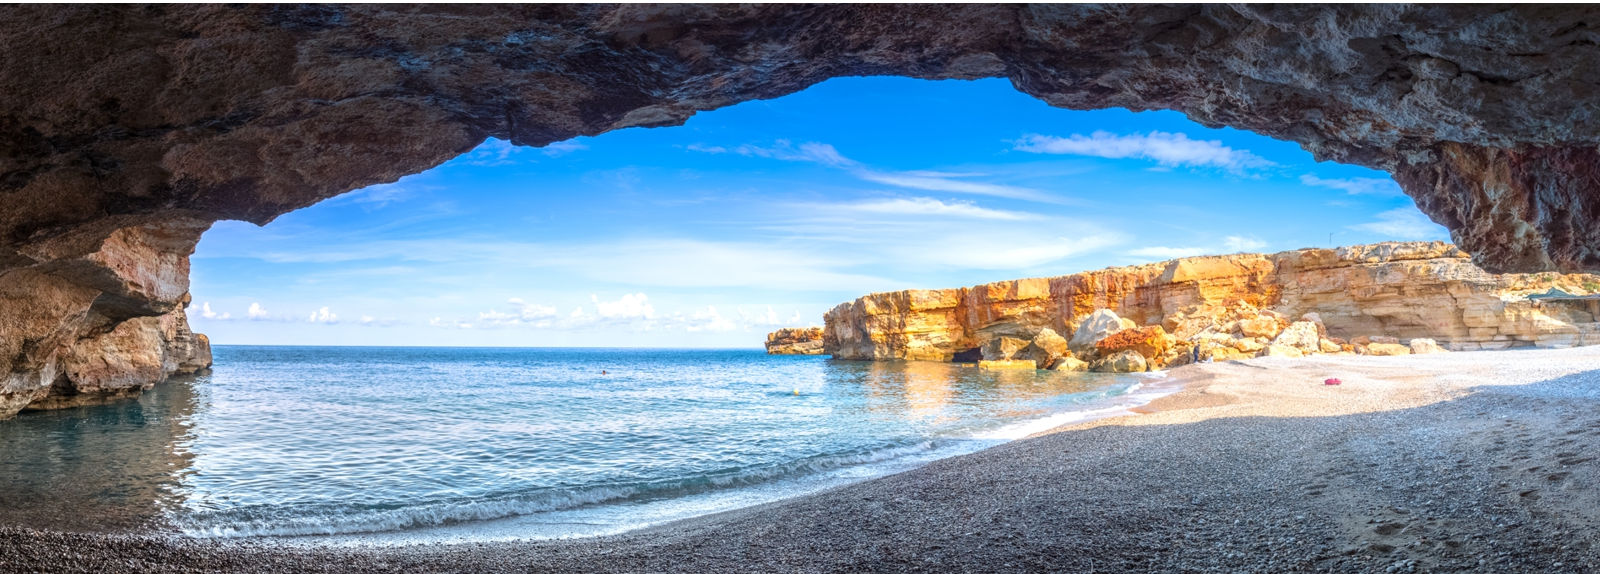 Cretan Beaches